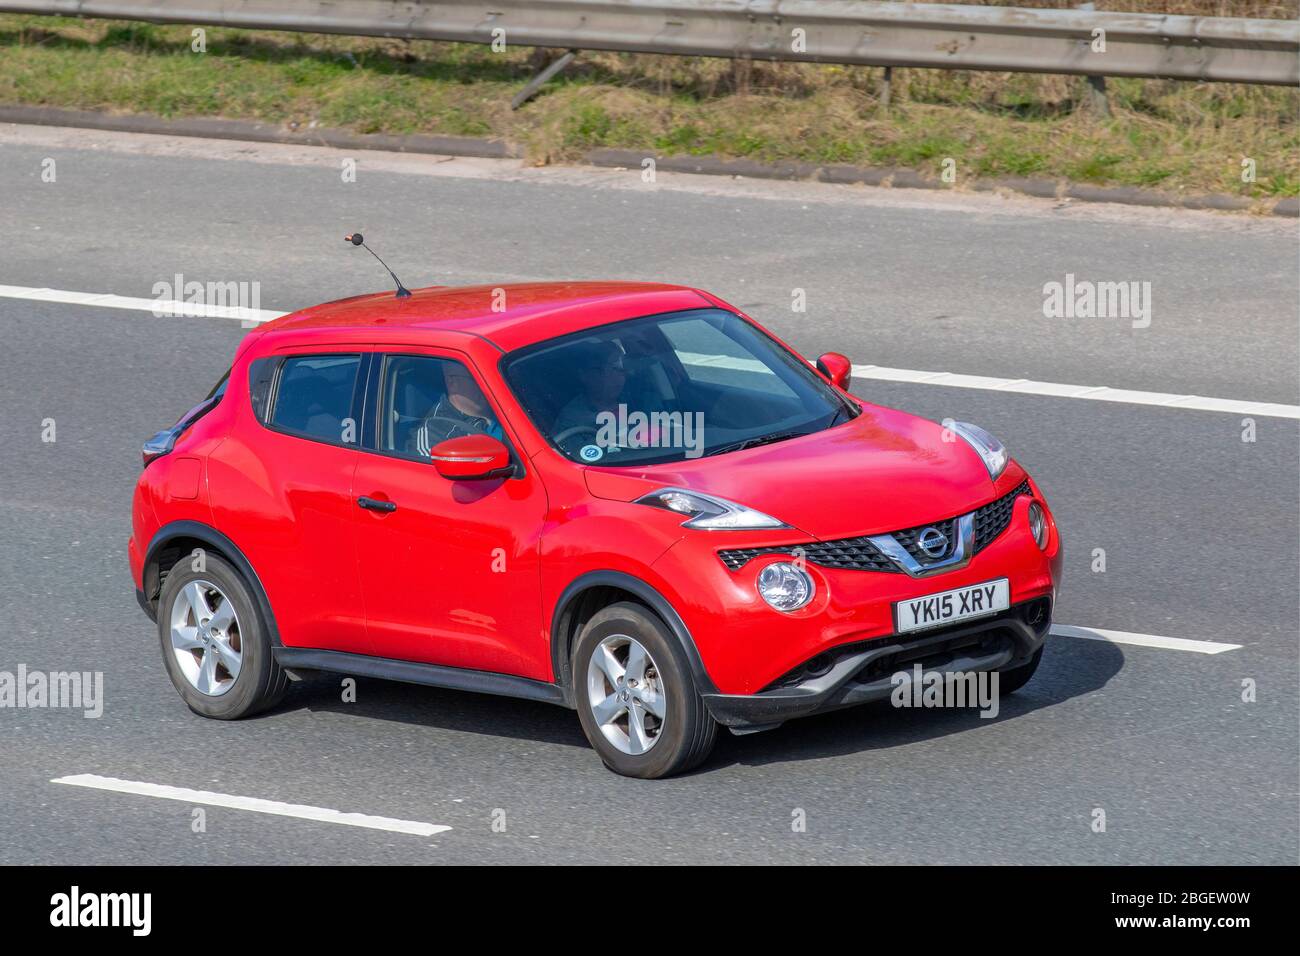 2015 rosso Nissan Juke Visia DCI; veicoli veicolari in movimento, veicoli in circolazione su strade britanniche, motori, motorizzazione sull'autostrada M6 Foto Stock